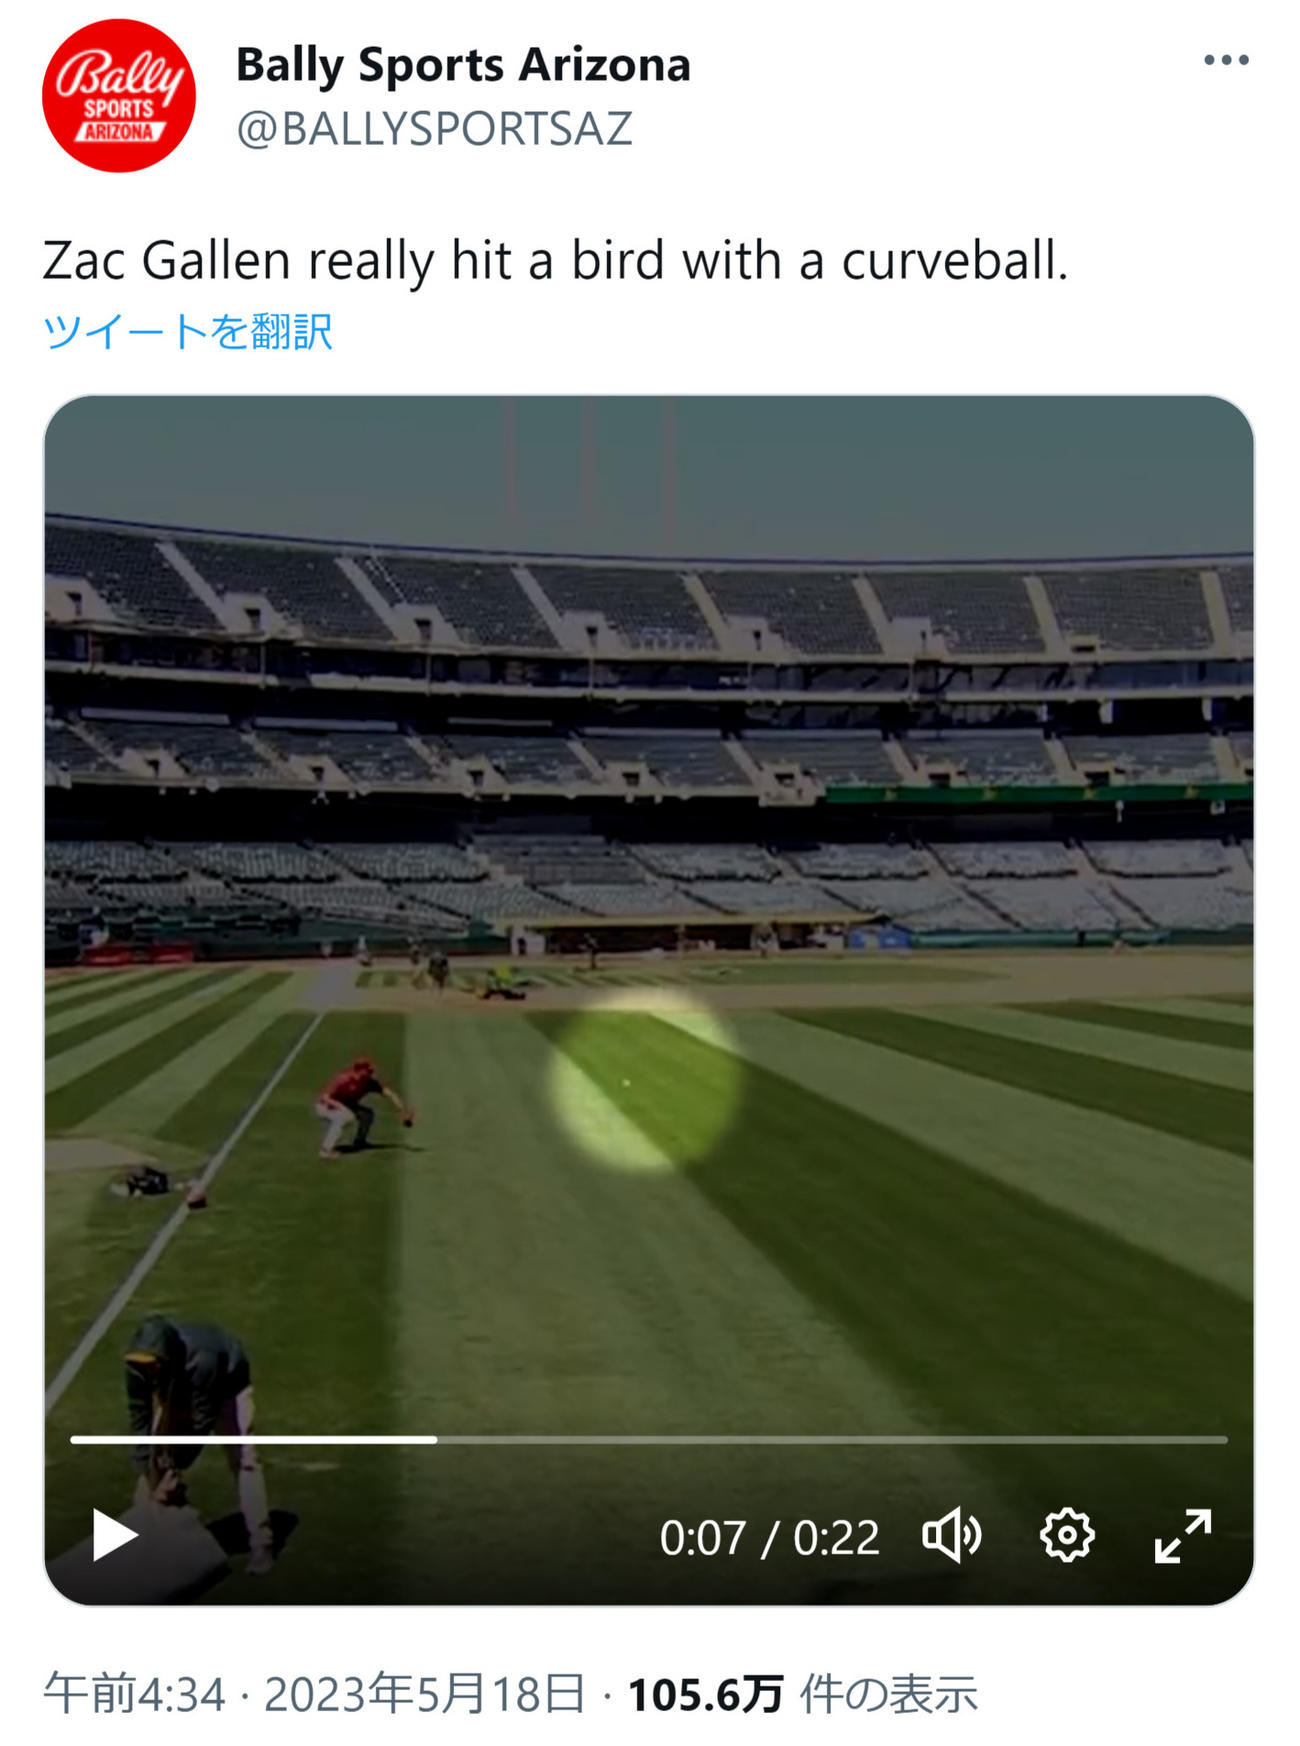 ダイヤモンドバックス、ザック・ゲーレンの投げた球に鳥が激突（Bally Sports ArizonaのTwitterから）